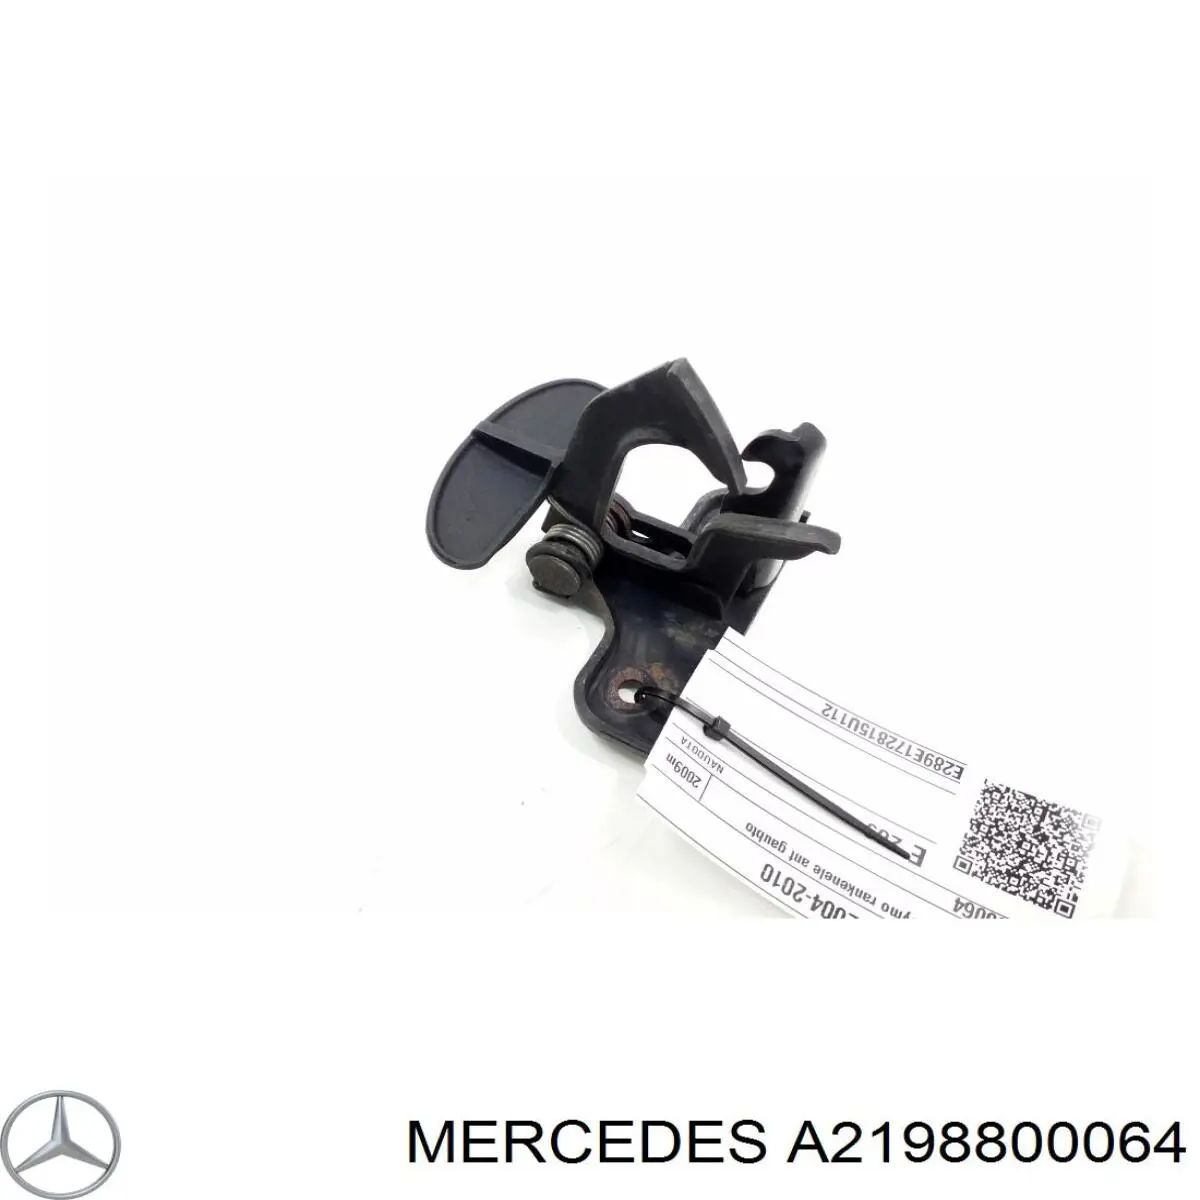 A2198800064 Mercedes стояк-крюк замка капота